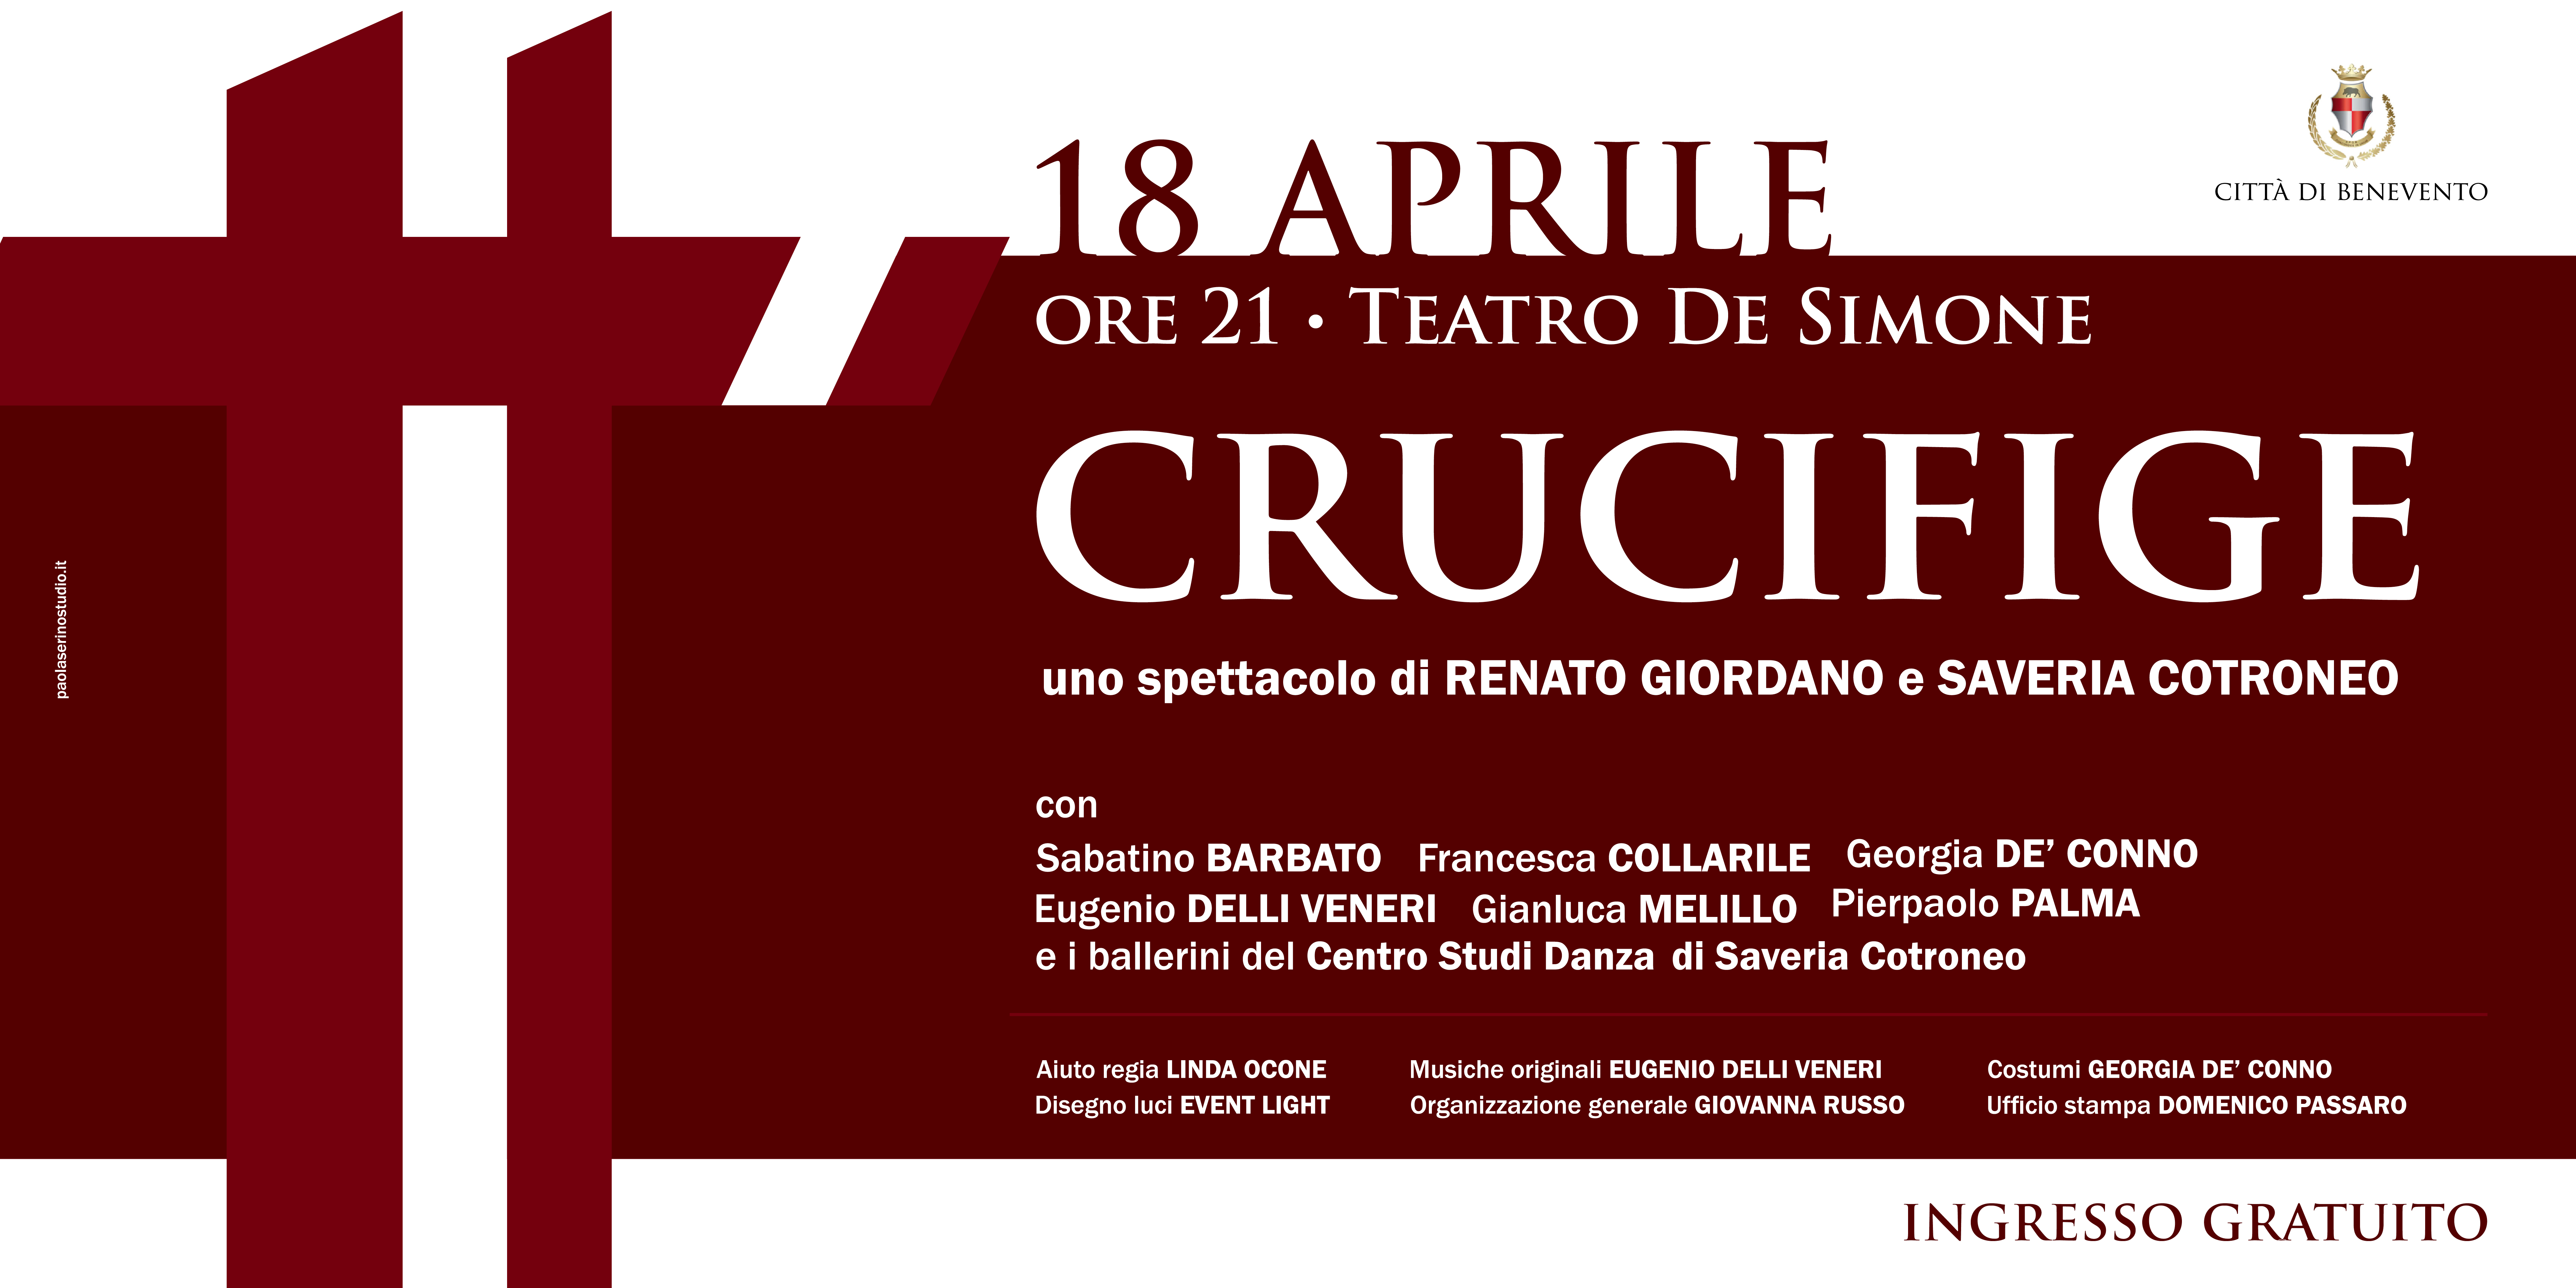 Benevento| Nuovo appuntamento al Teatro De Simone con “Crucifige” di Giordano e Cotroneo